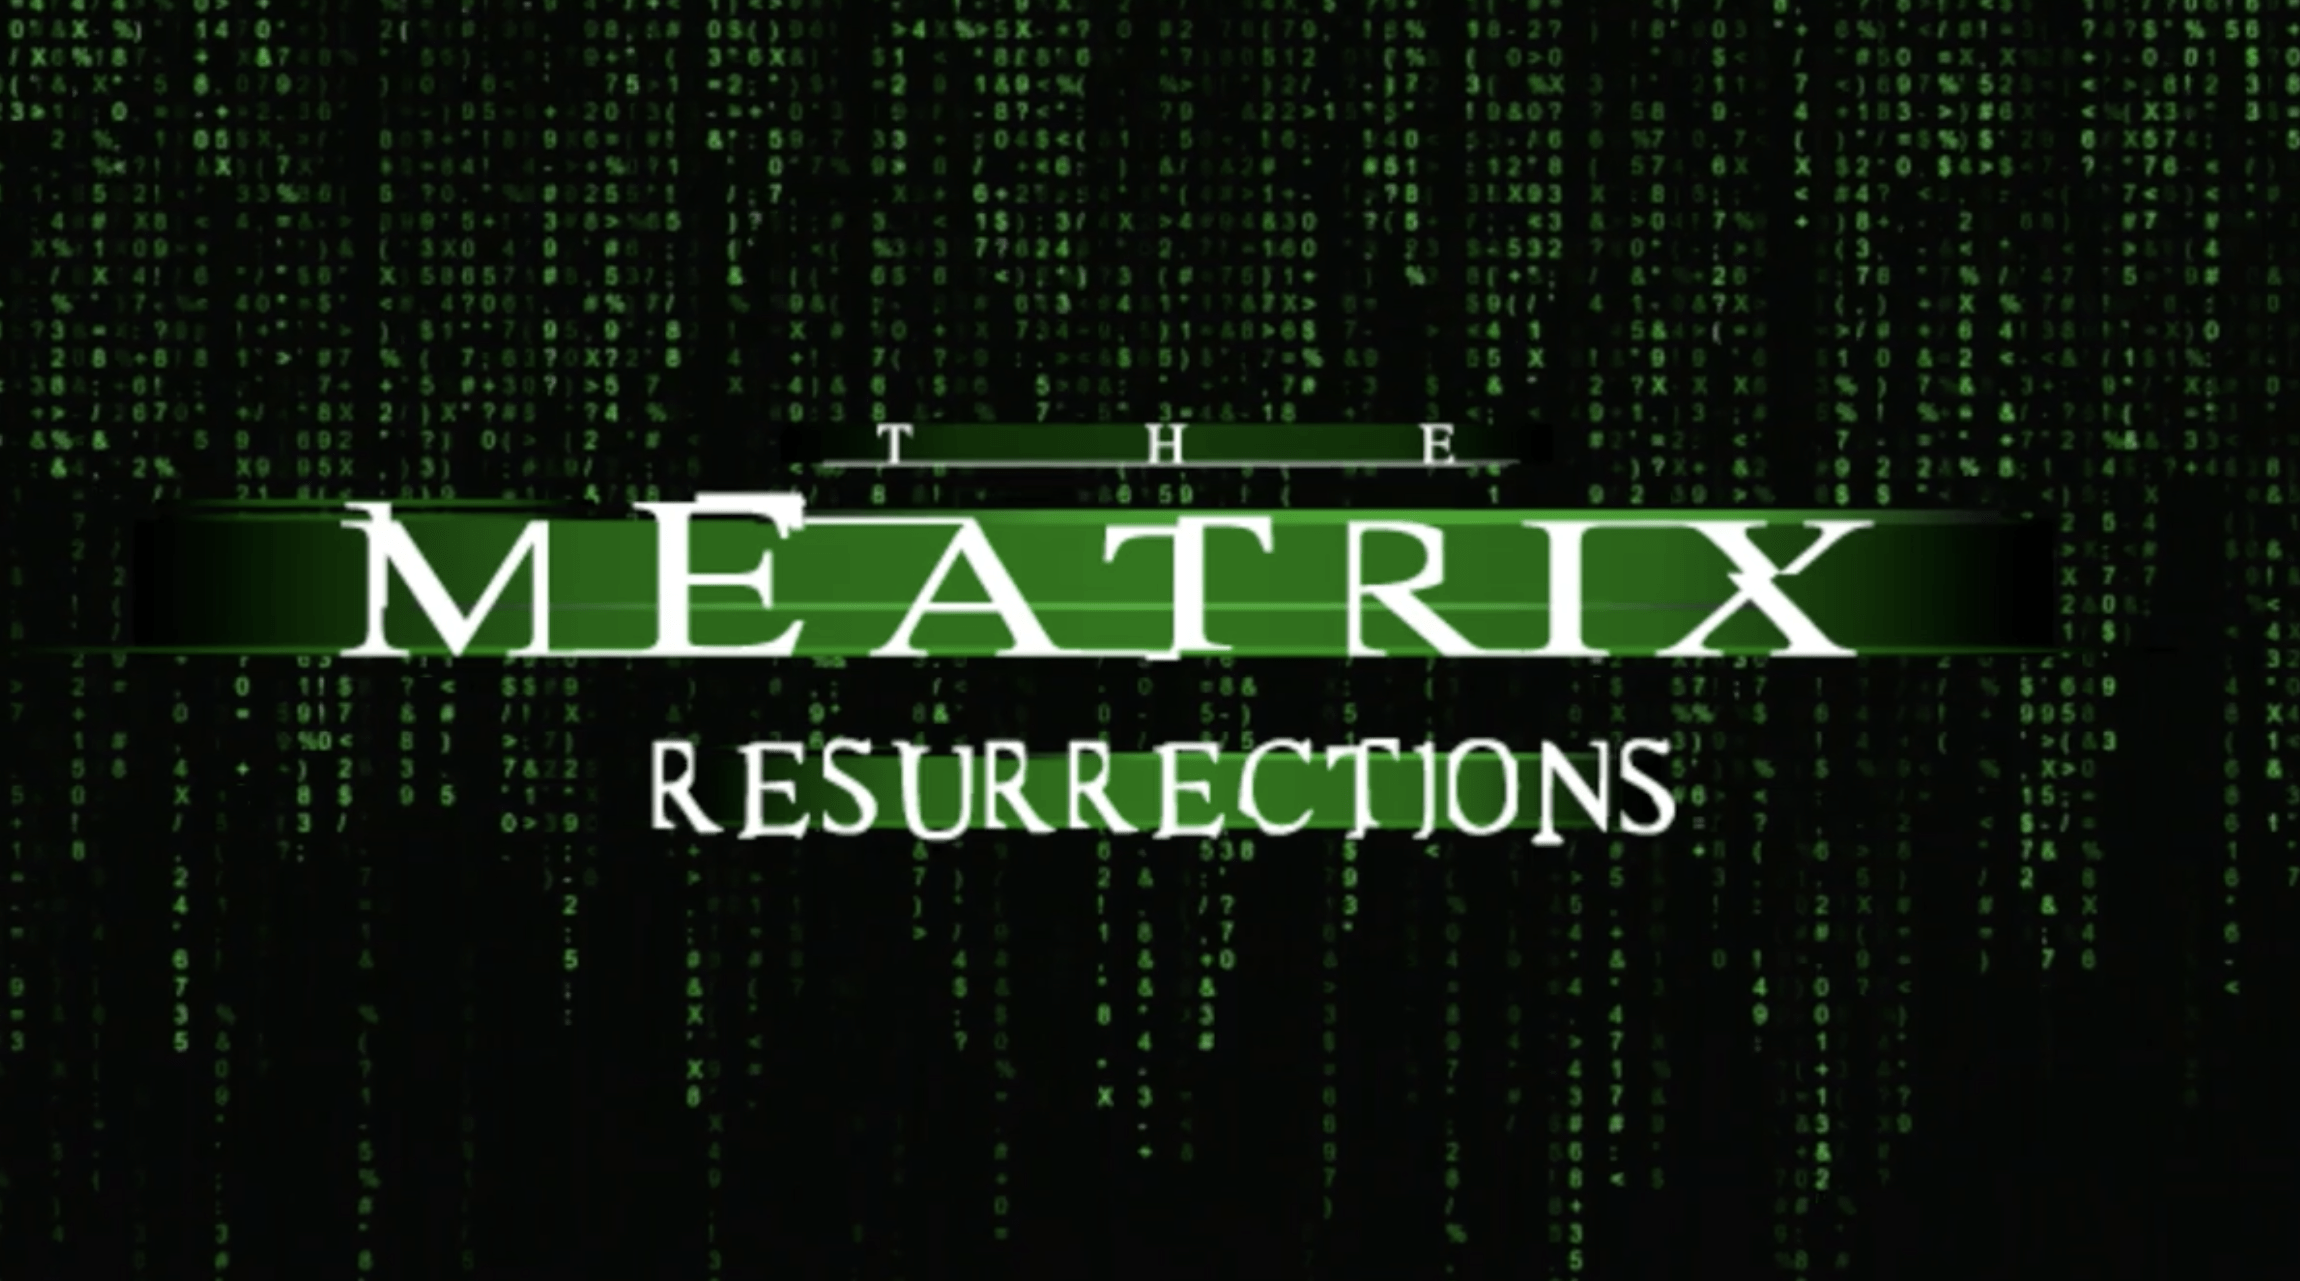 meatrix_resurrections